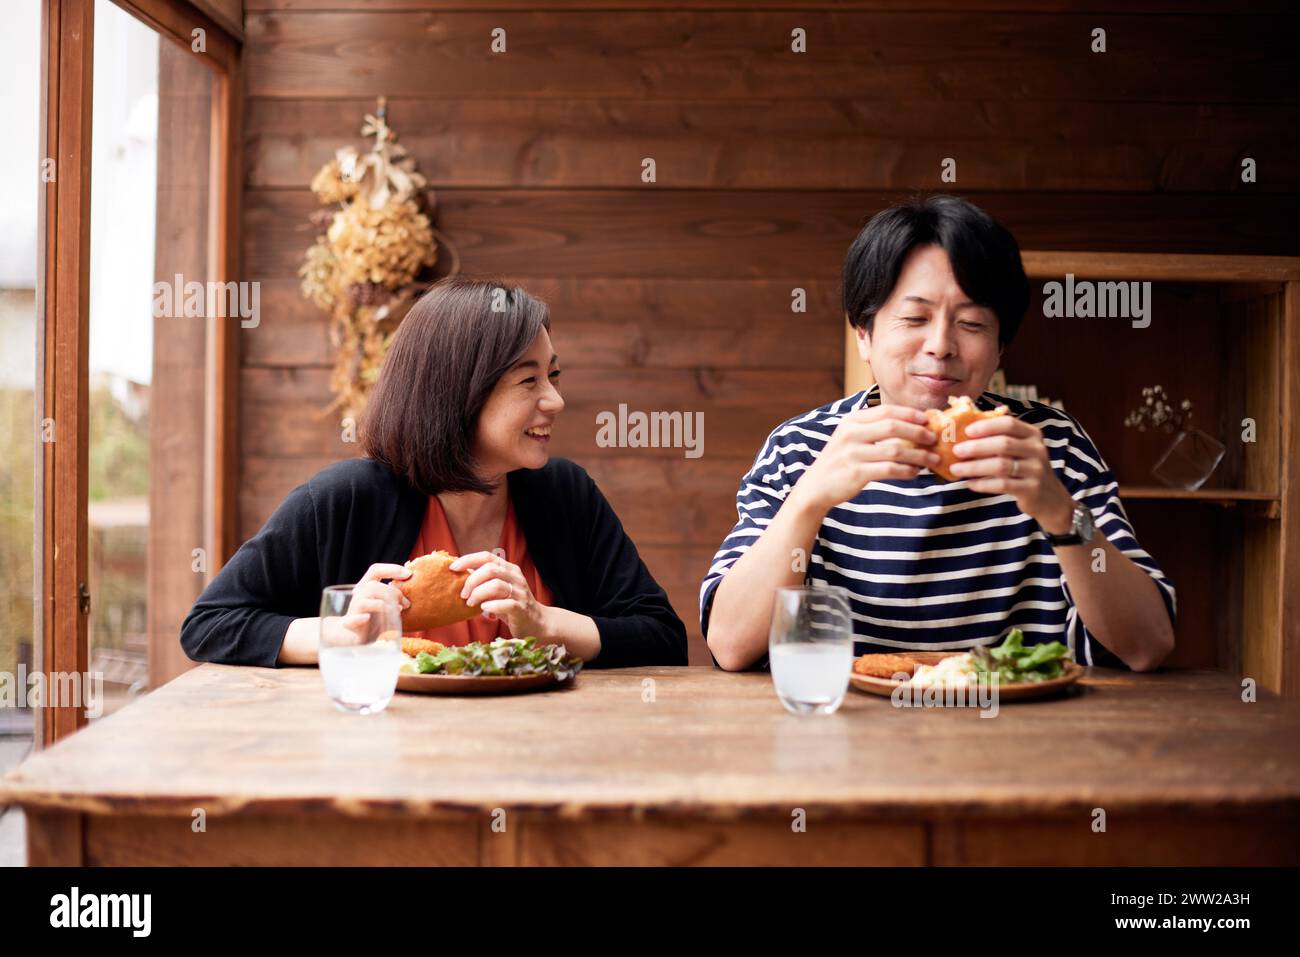 Deux personnes mangeant un sandwich Banque D'Images